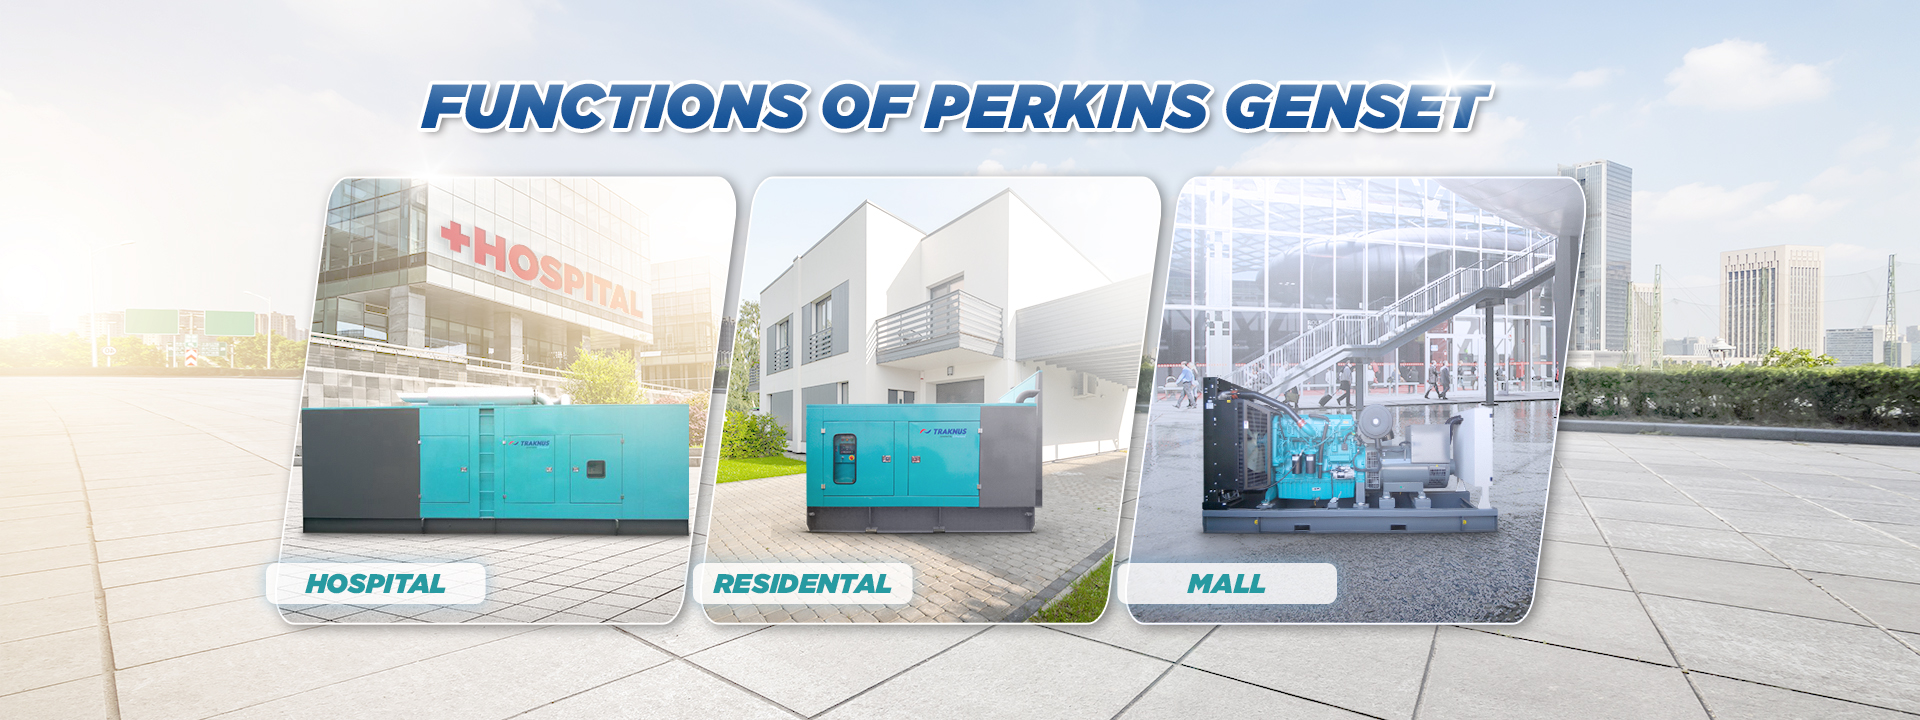 Functions of perkins genset